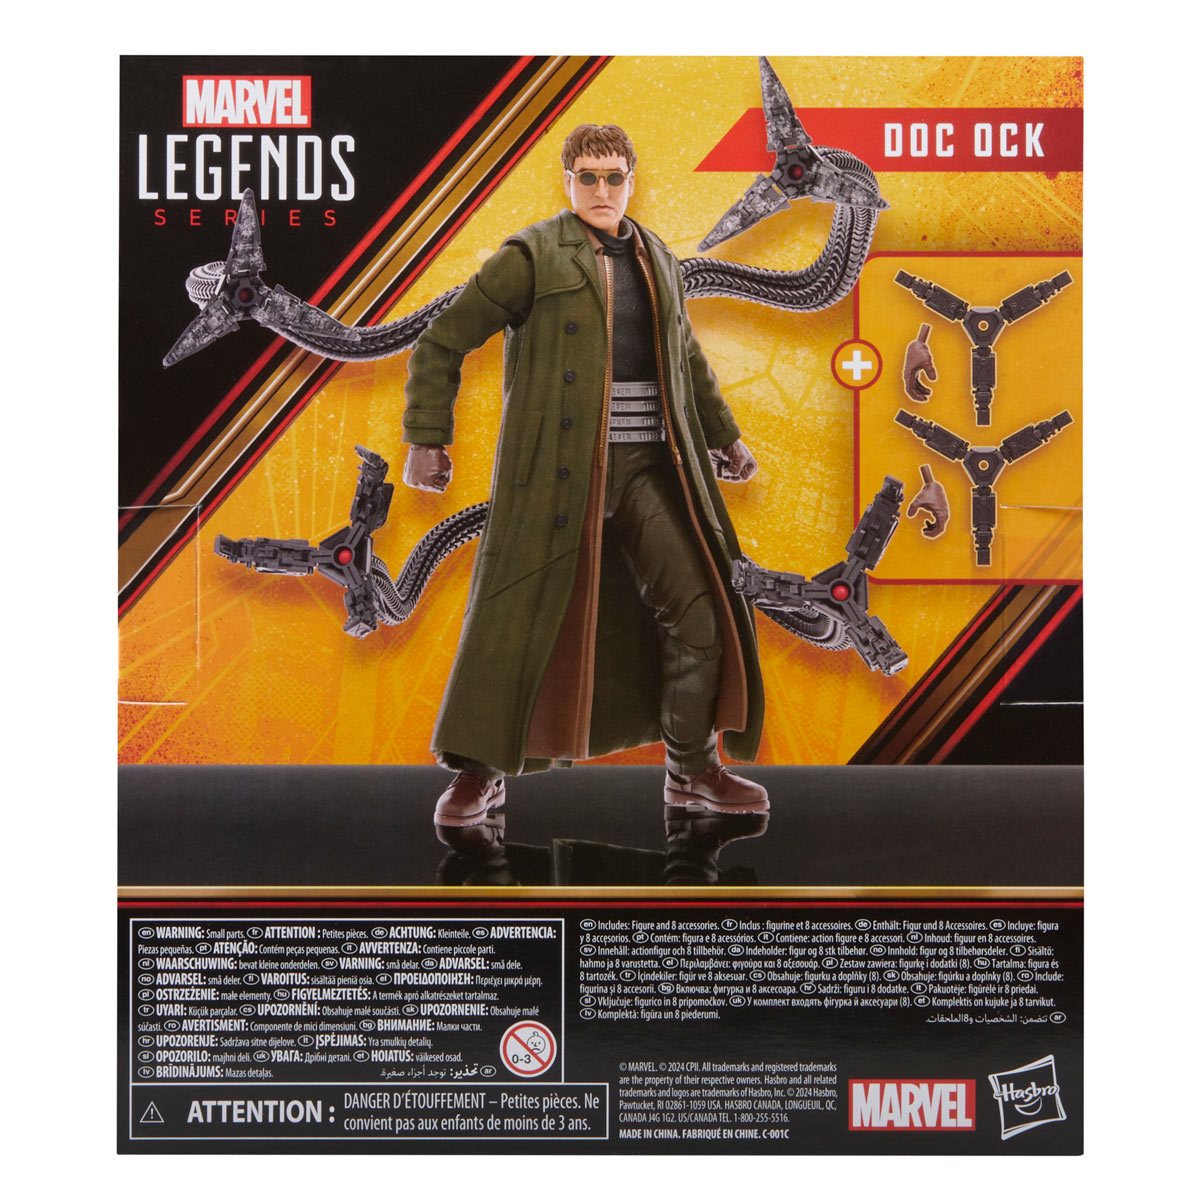 Marvel Legends Spider-Man: No Way Home Doc Ock Deluxe Action Figure